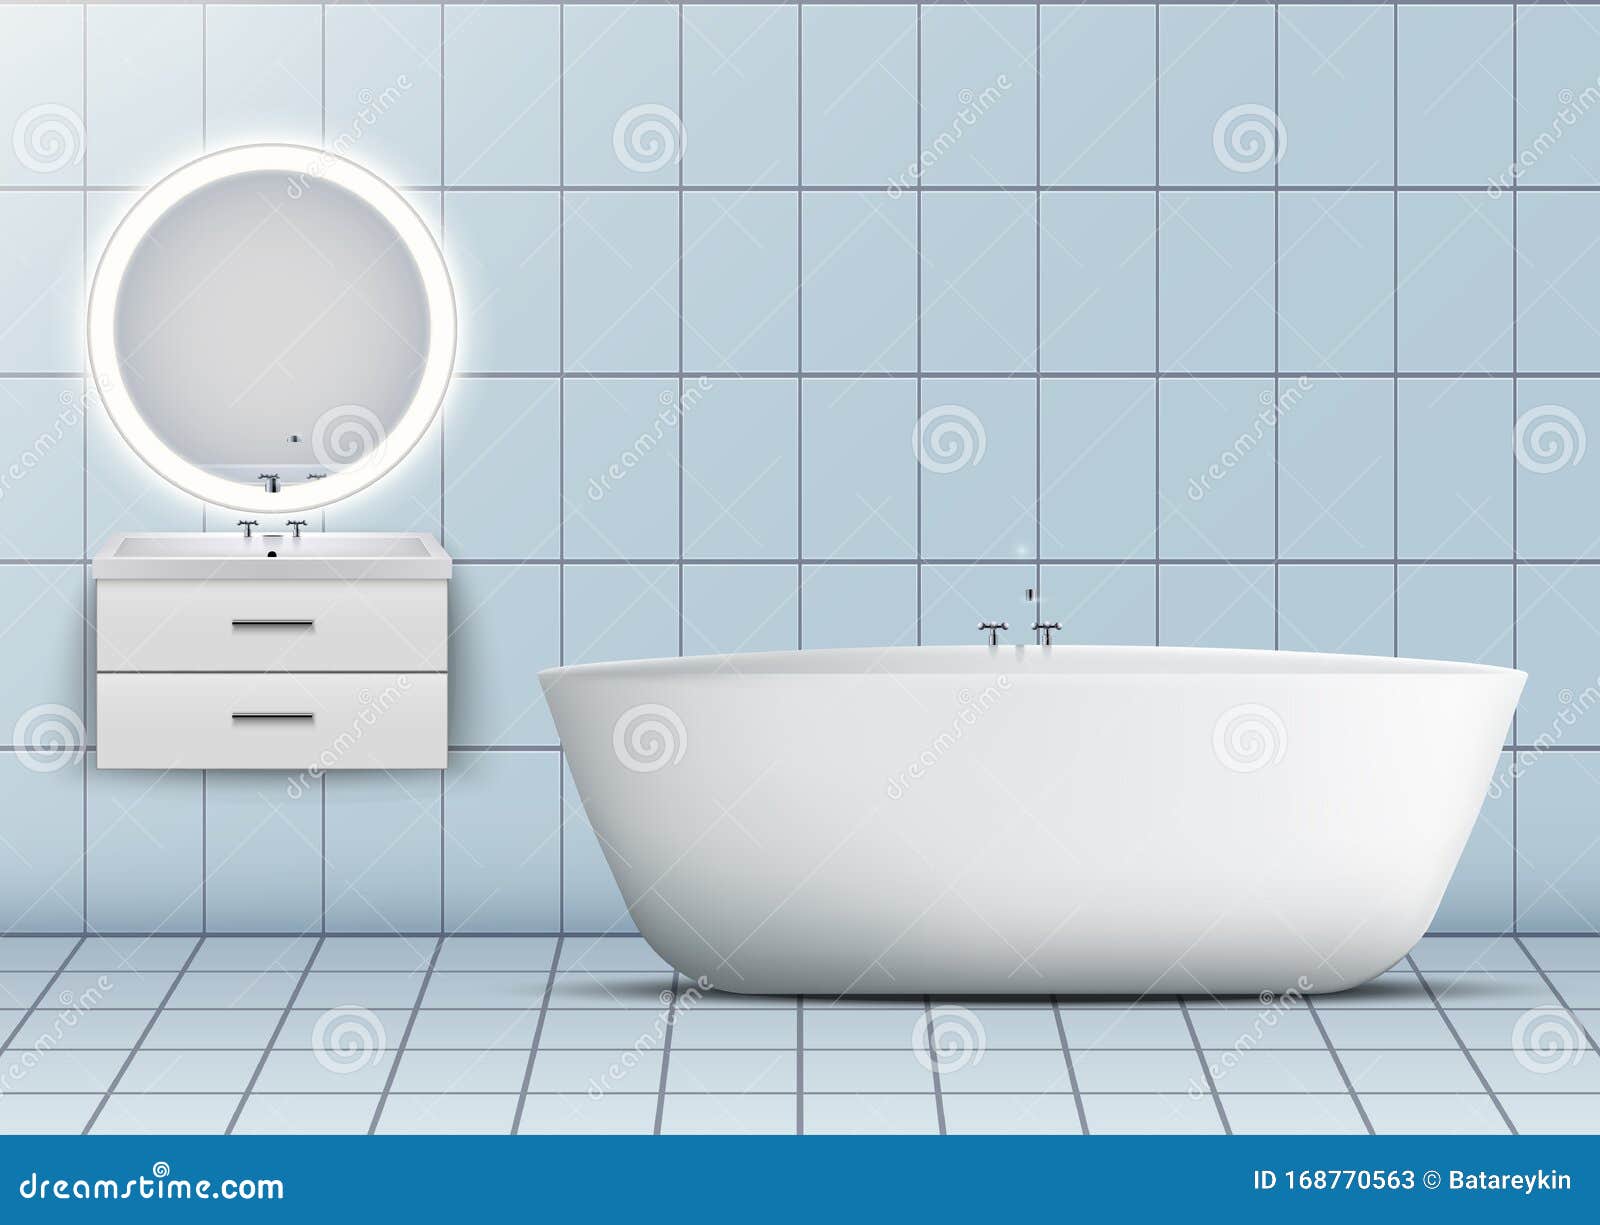 Badewanne Und Waschbecken Mit Spiegel Vektor Abbildung - Illustration